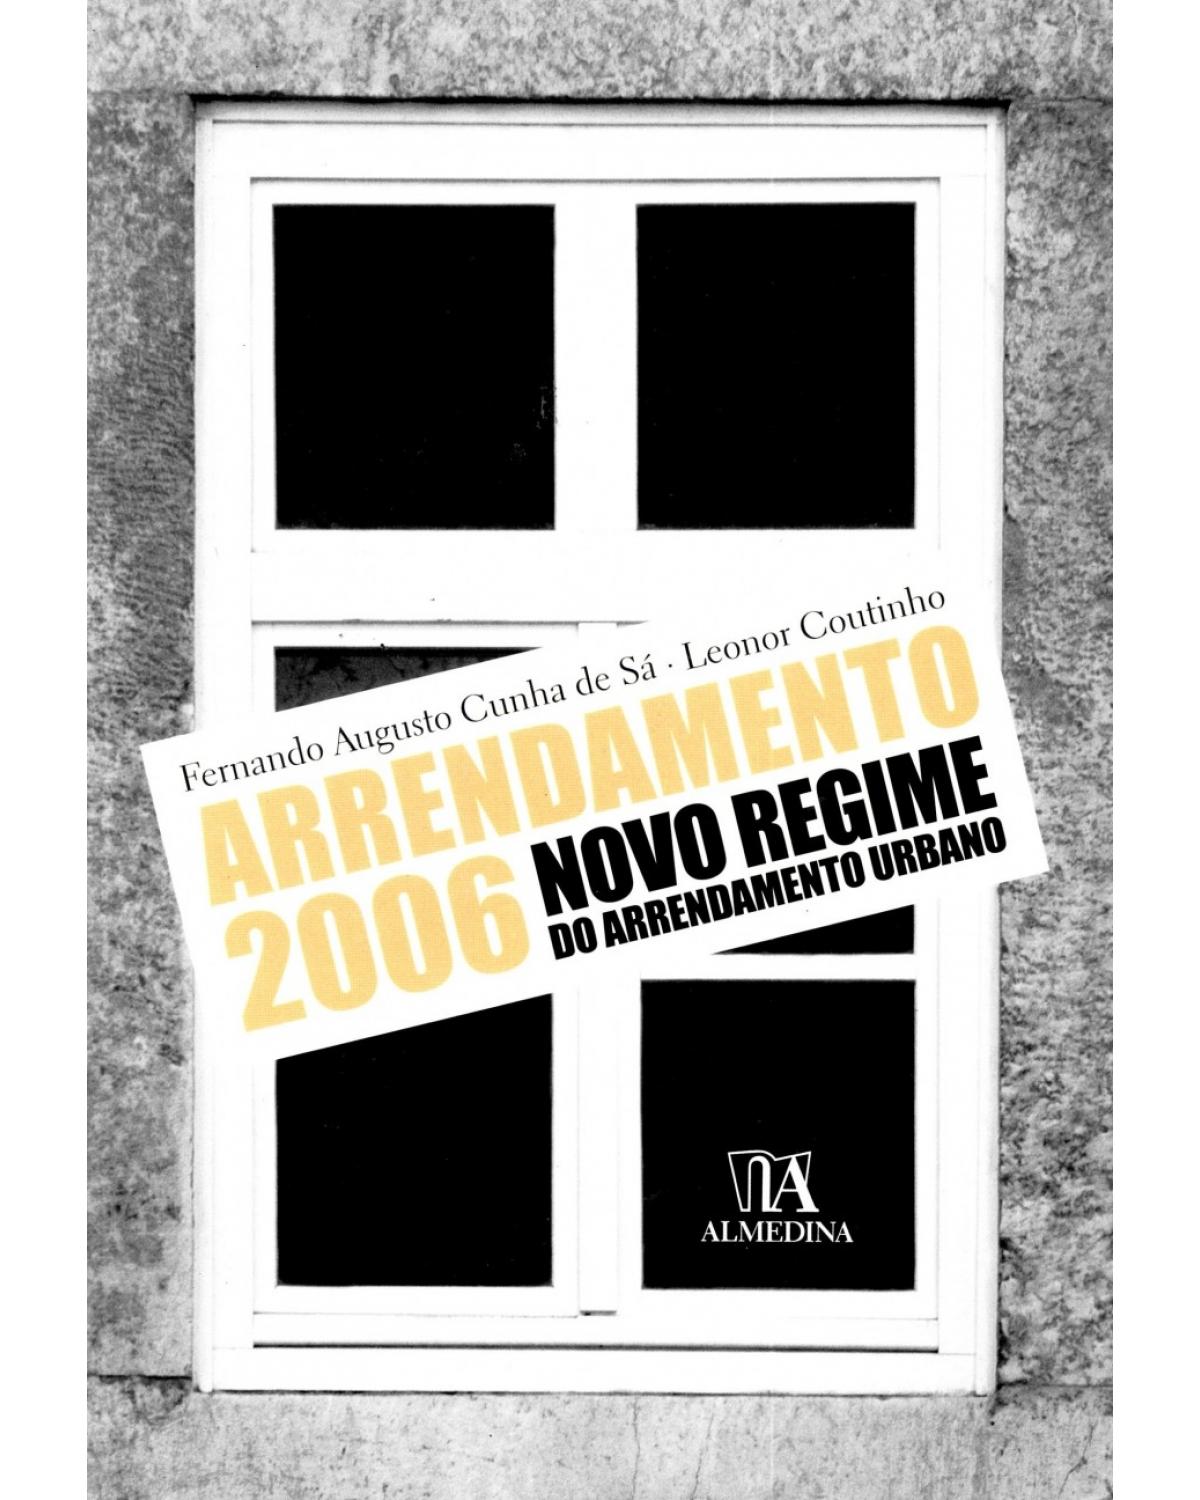 Arrendamento 2006 - novo regime do arrendamento urbano - 1ª Edição | 2006